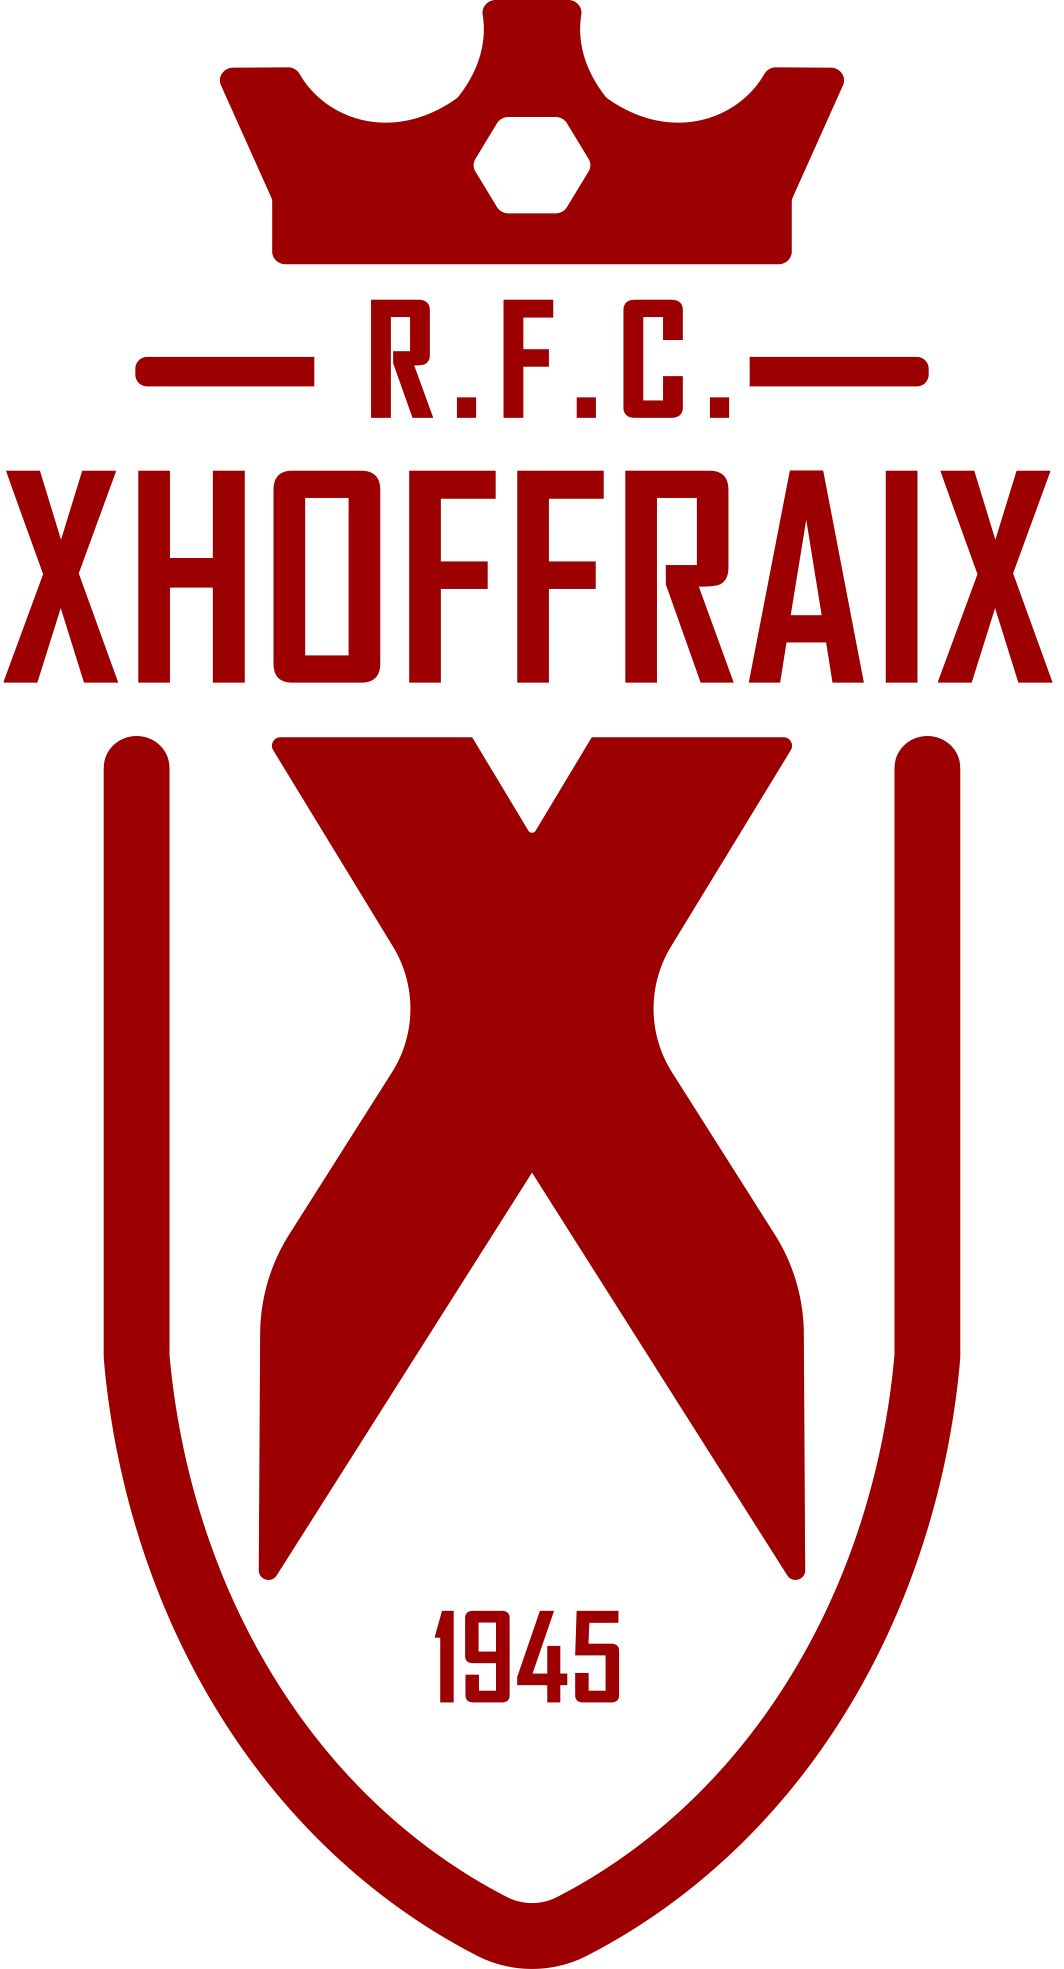 4 - Xhoffraix B